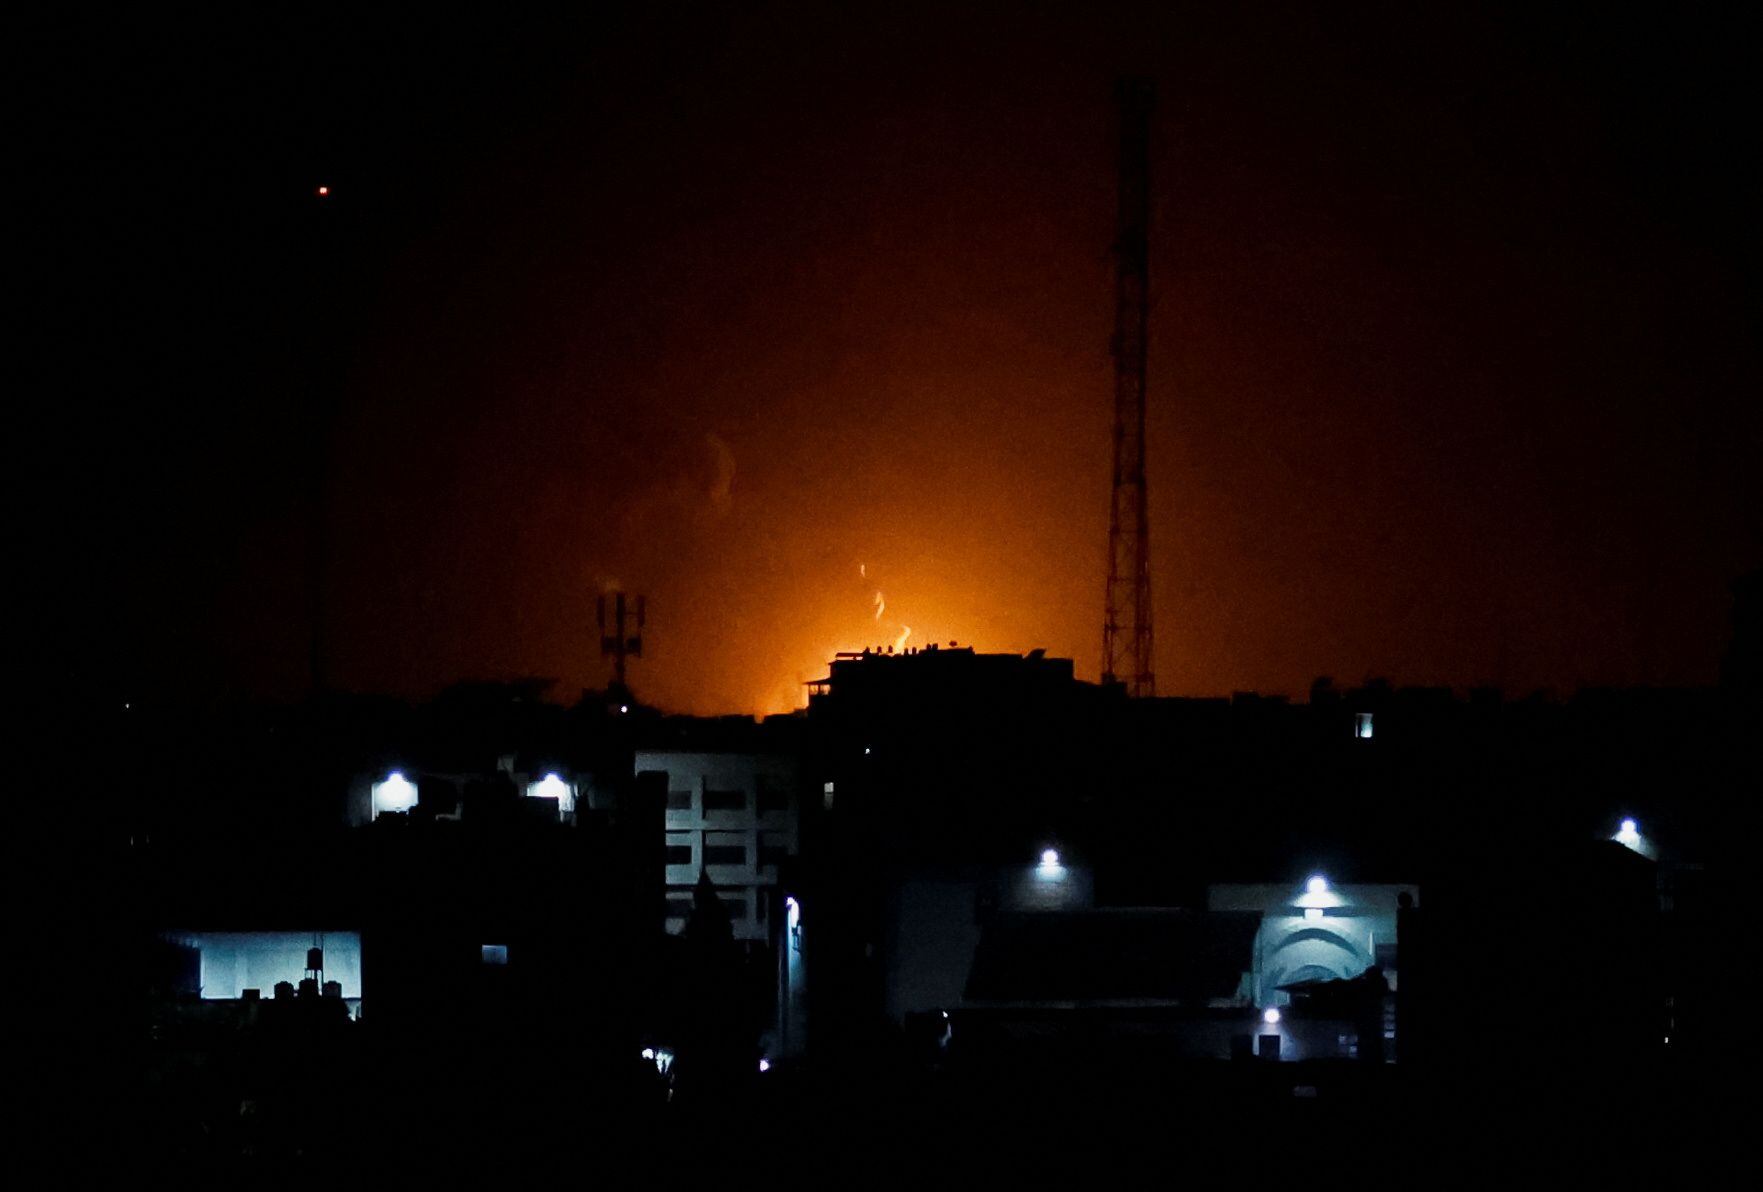 Durante la madrugada de este jueves, Israel bombardeó la Franja de Gaza como represalia por varios cohetes lanzados desde el enclave costero, informó el Ejército israelí, (REUTERS)